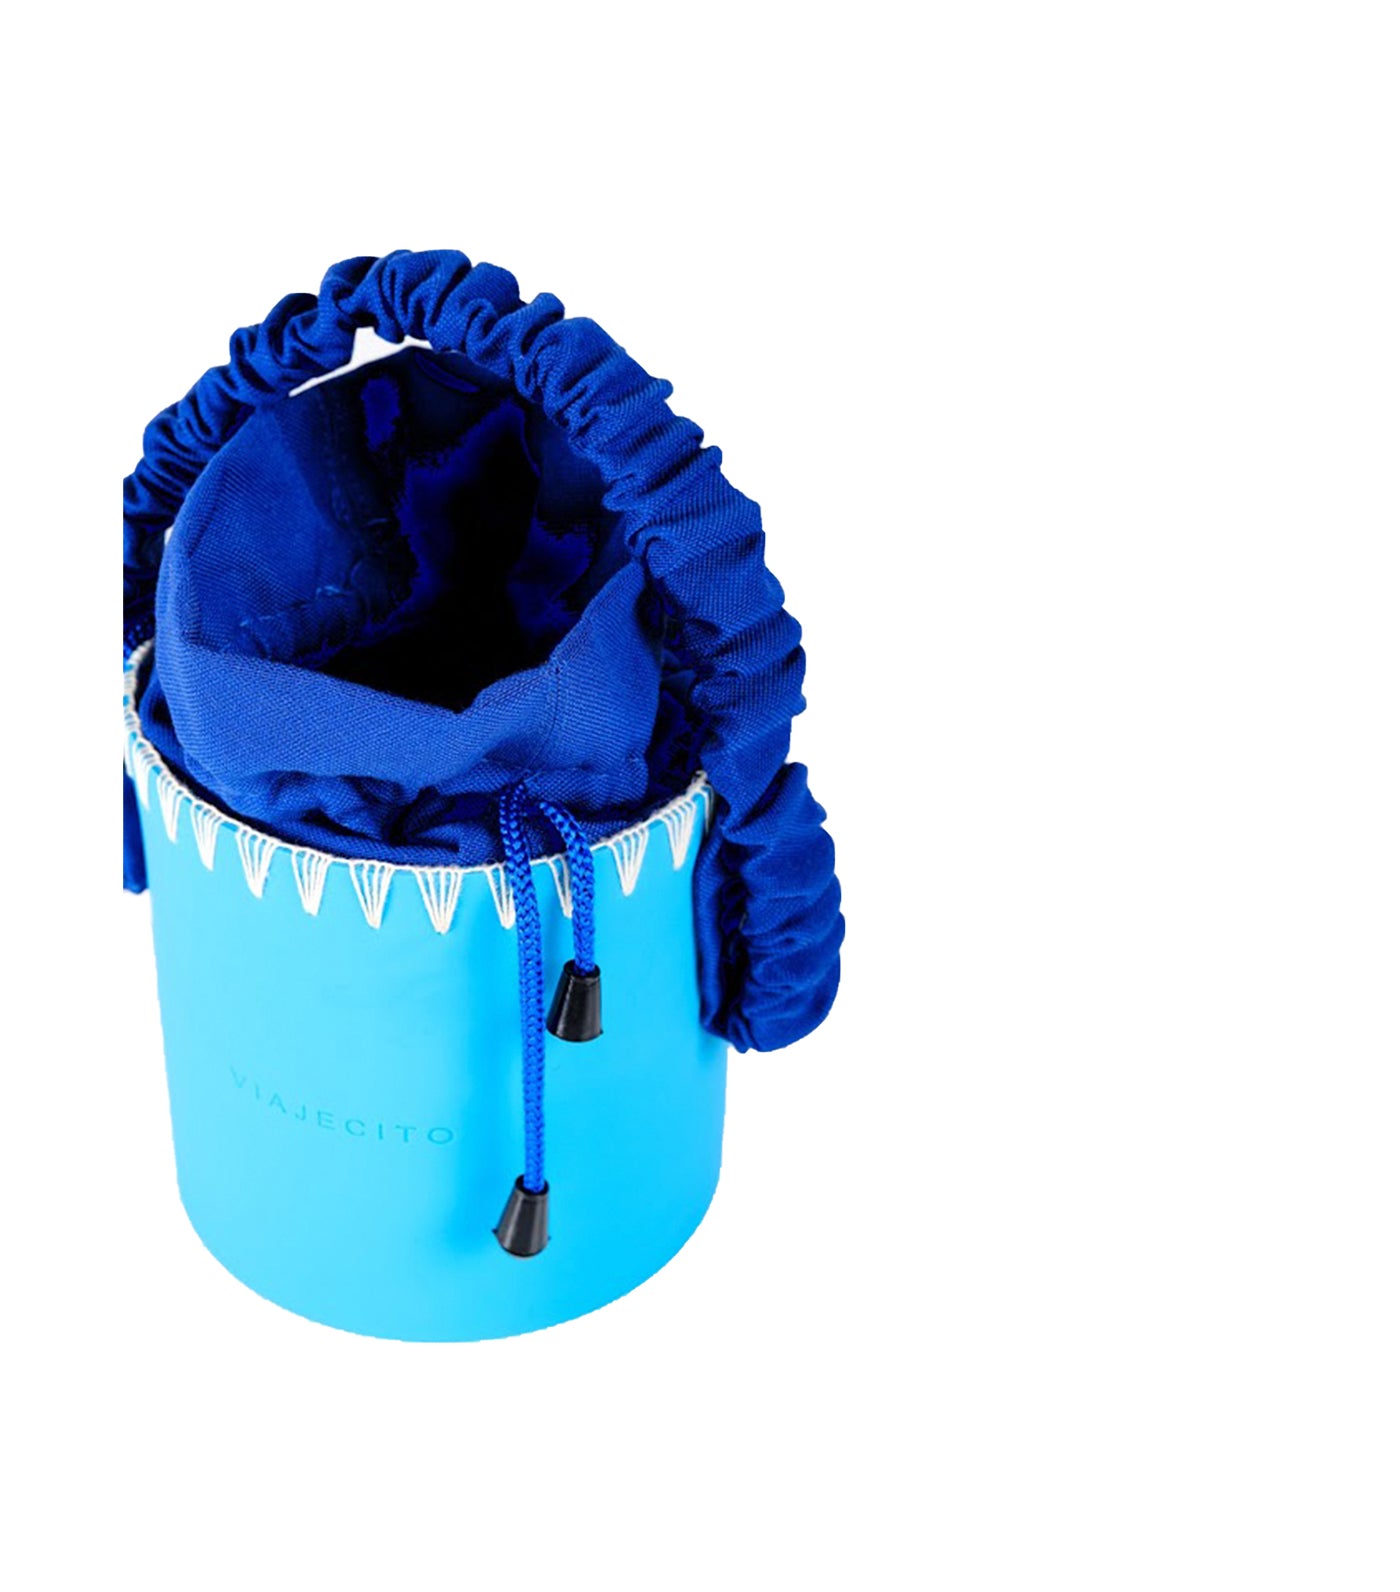 viajecito milvidas splashbucket monochrome blue